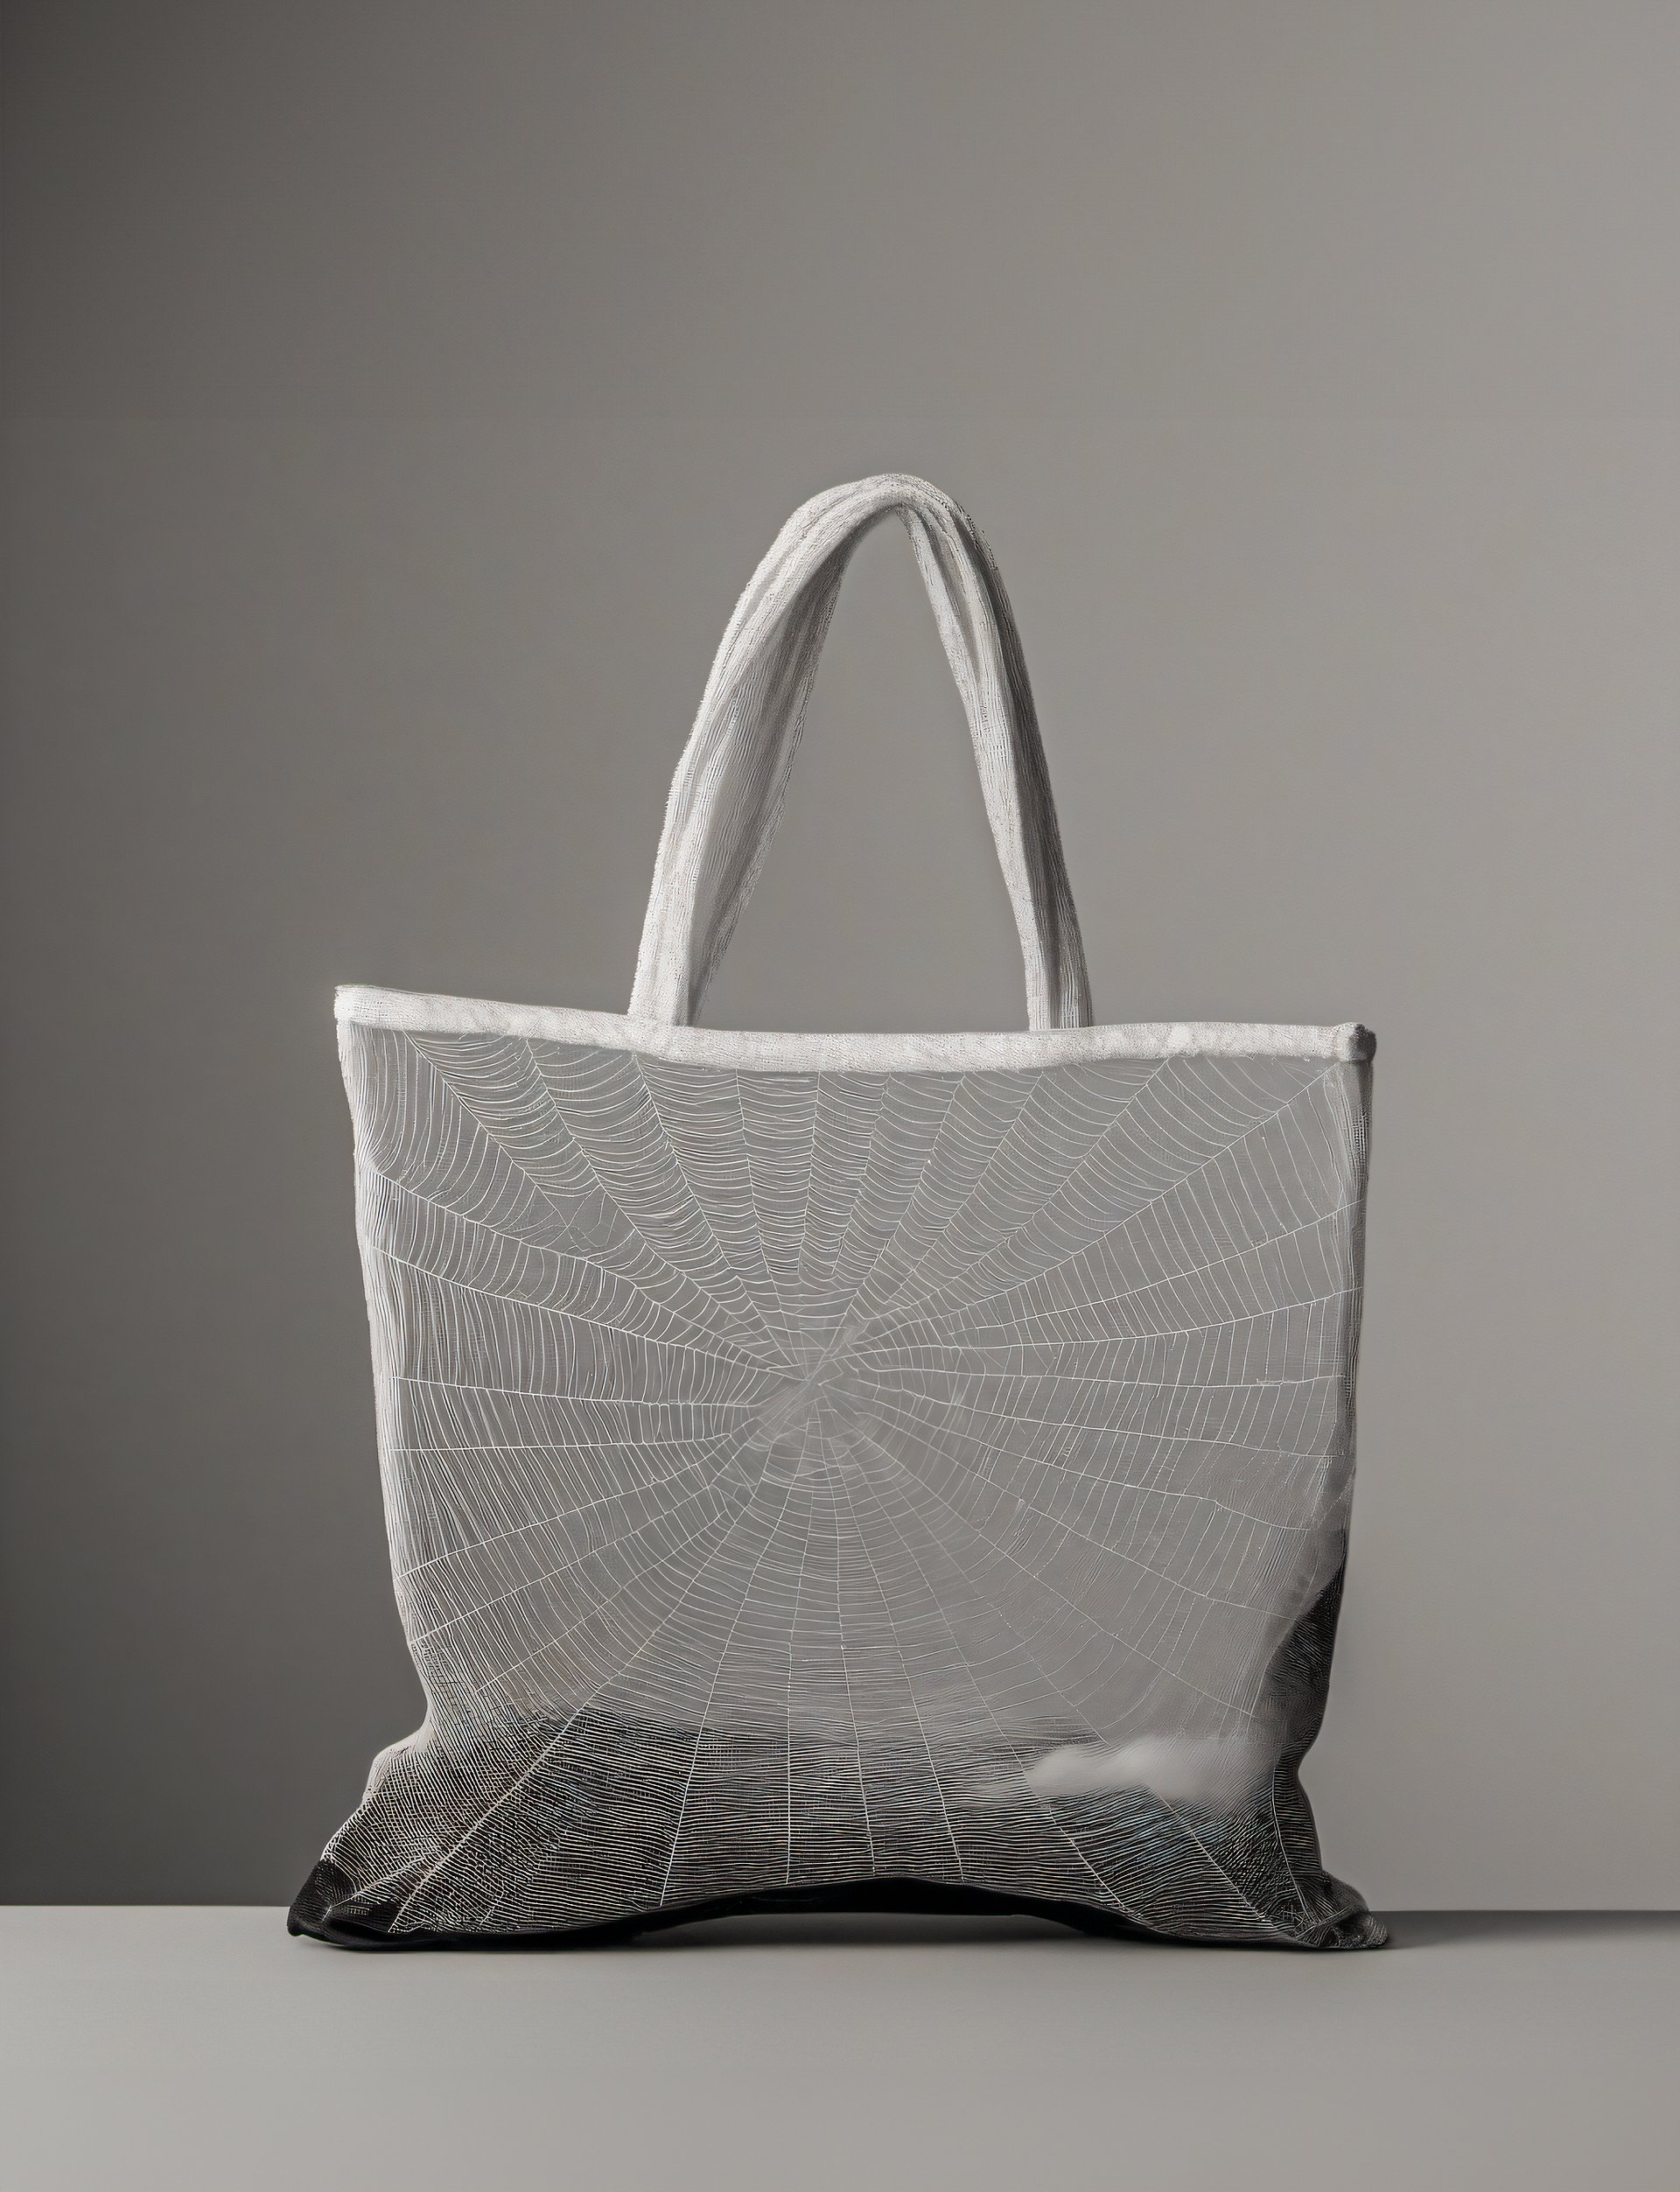 spider web bag